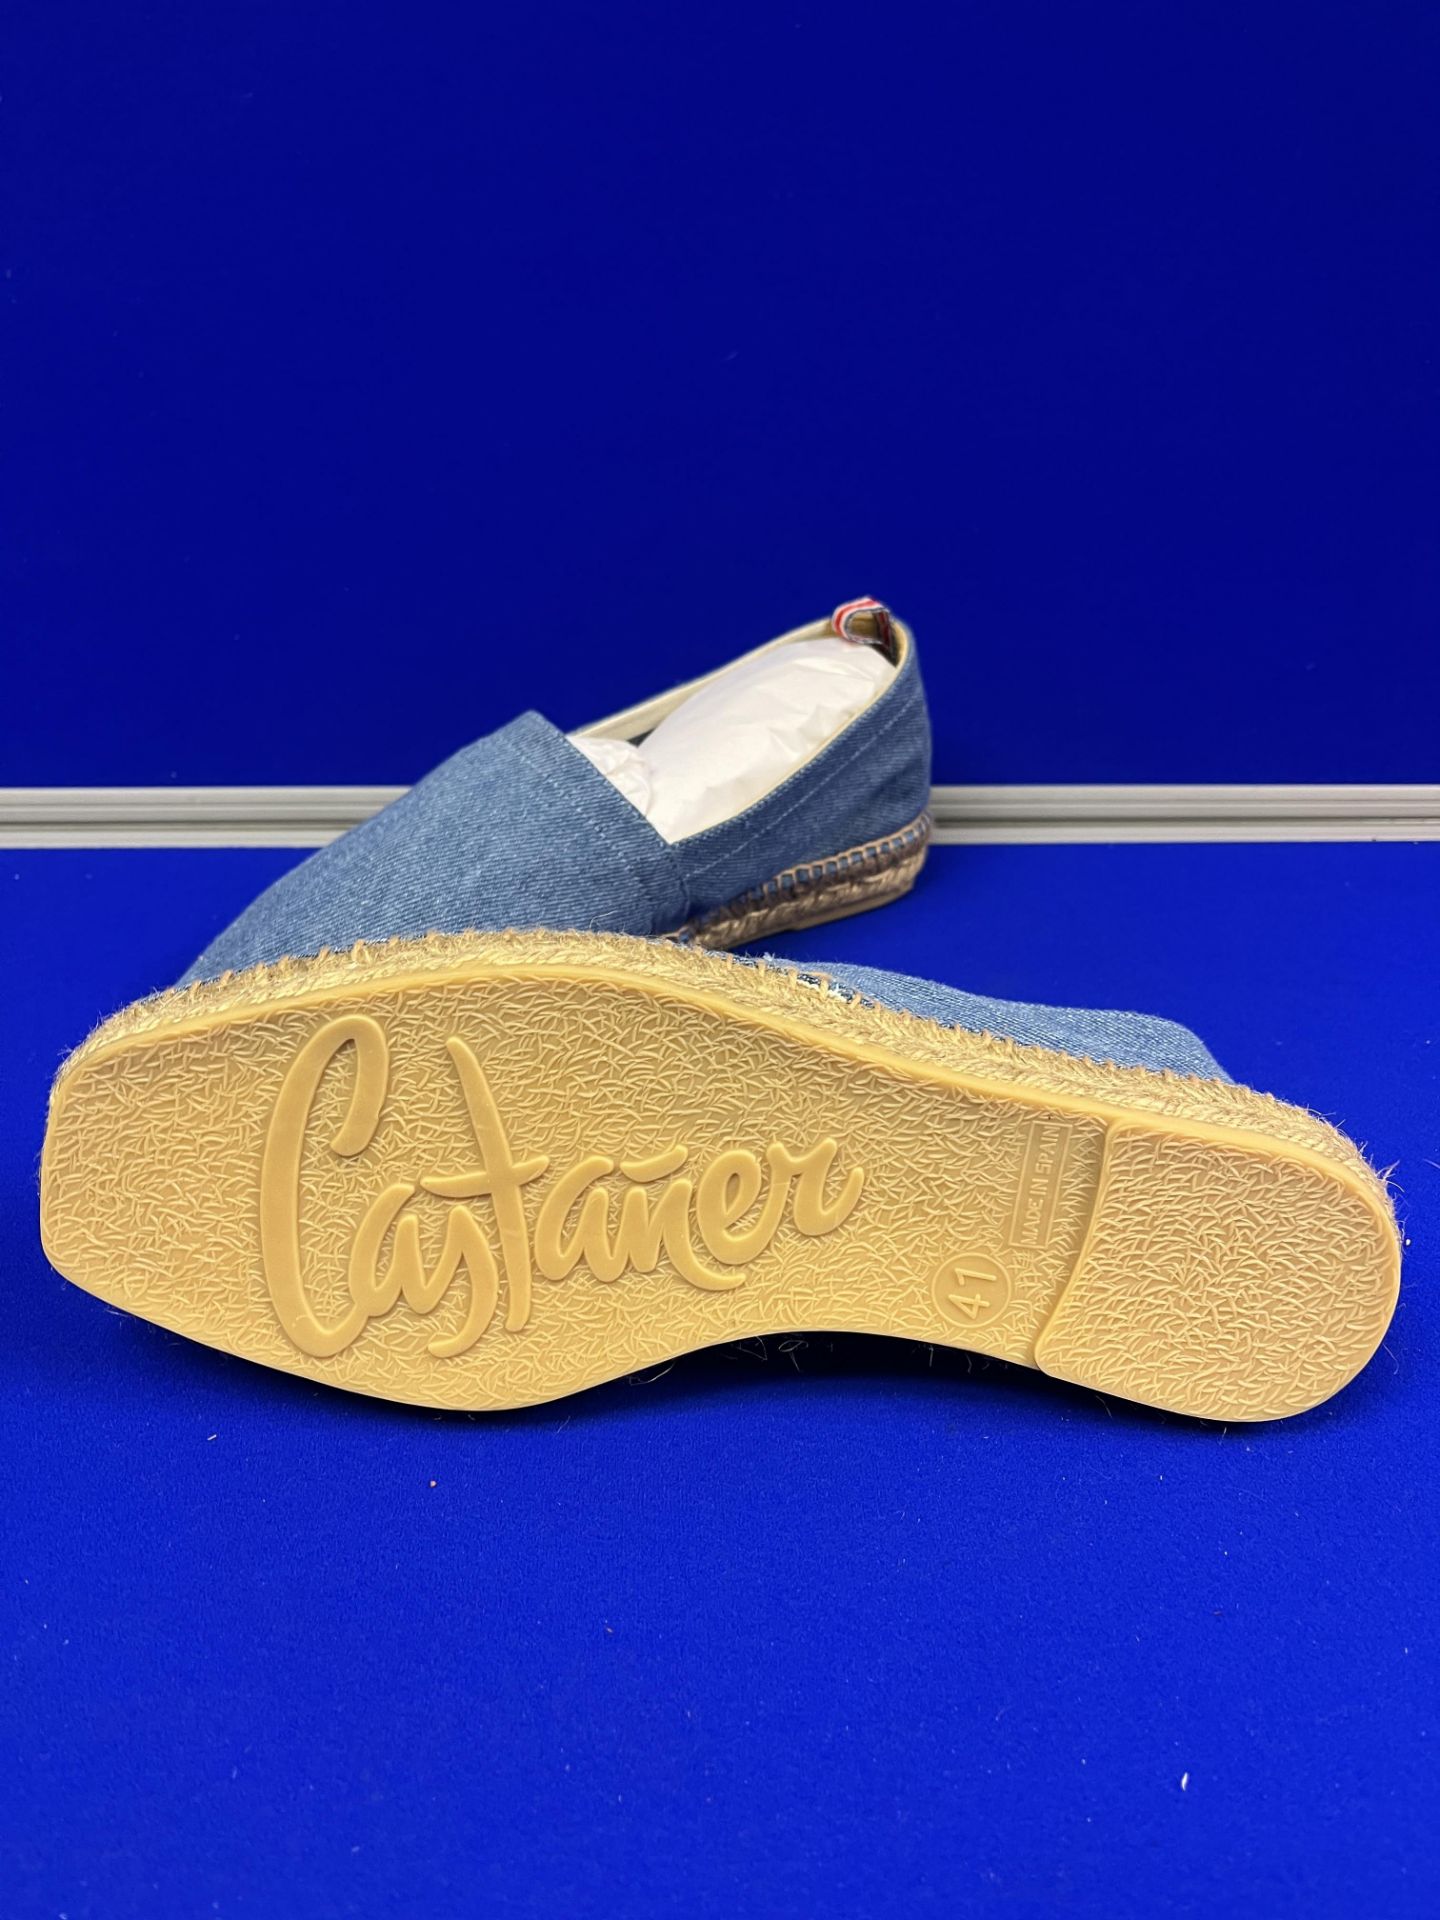 Castaner Slip On Shoes - Blue Size EU41 - Image 2 of 2